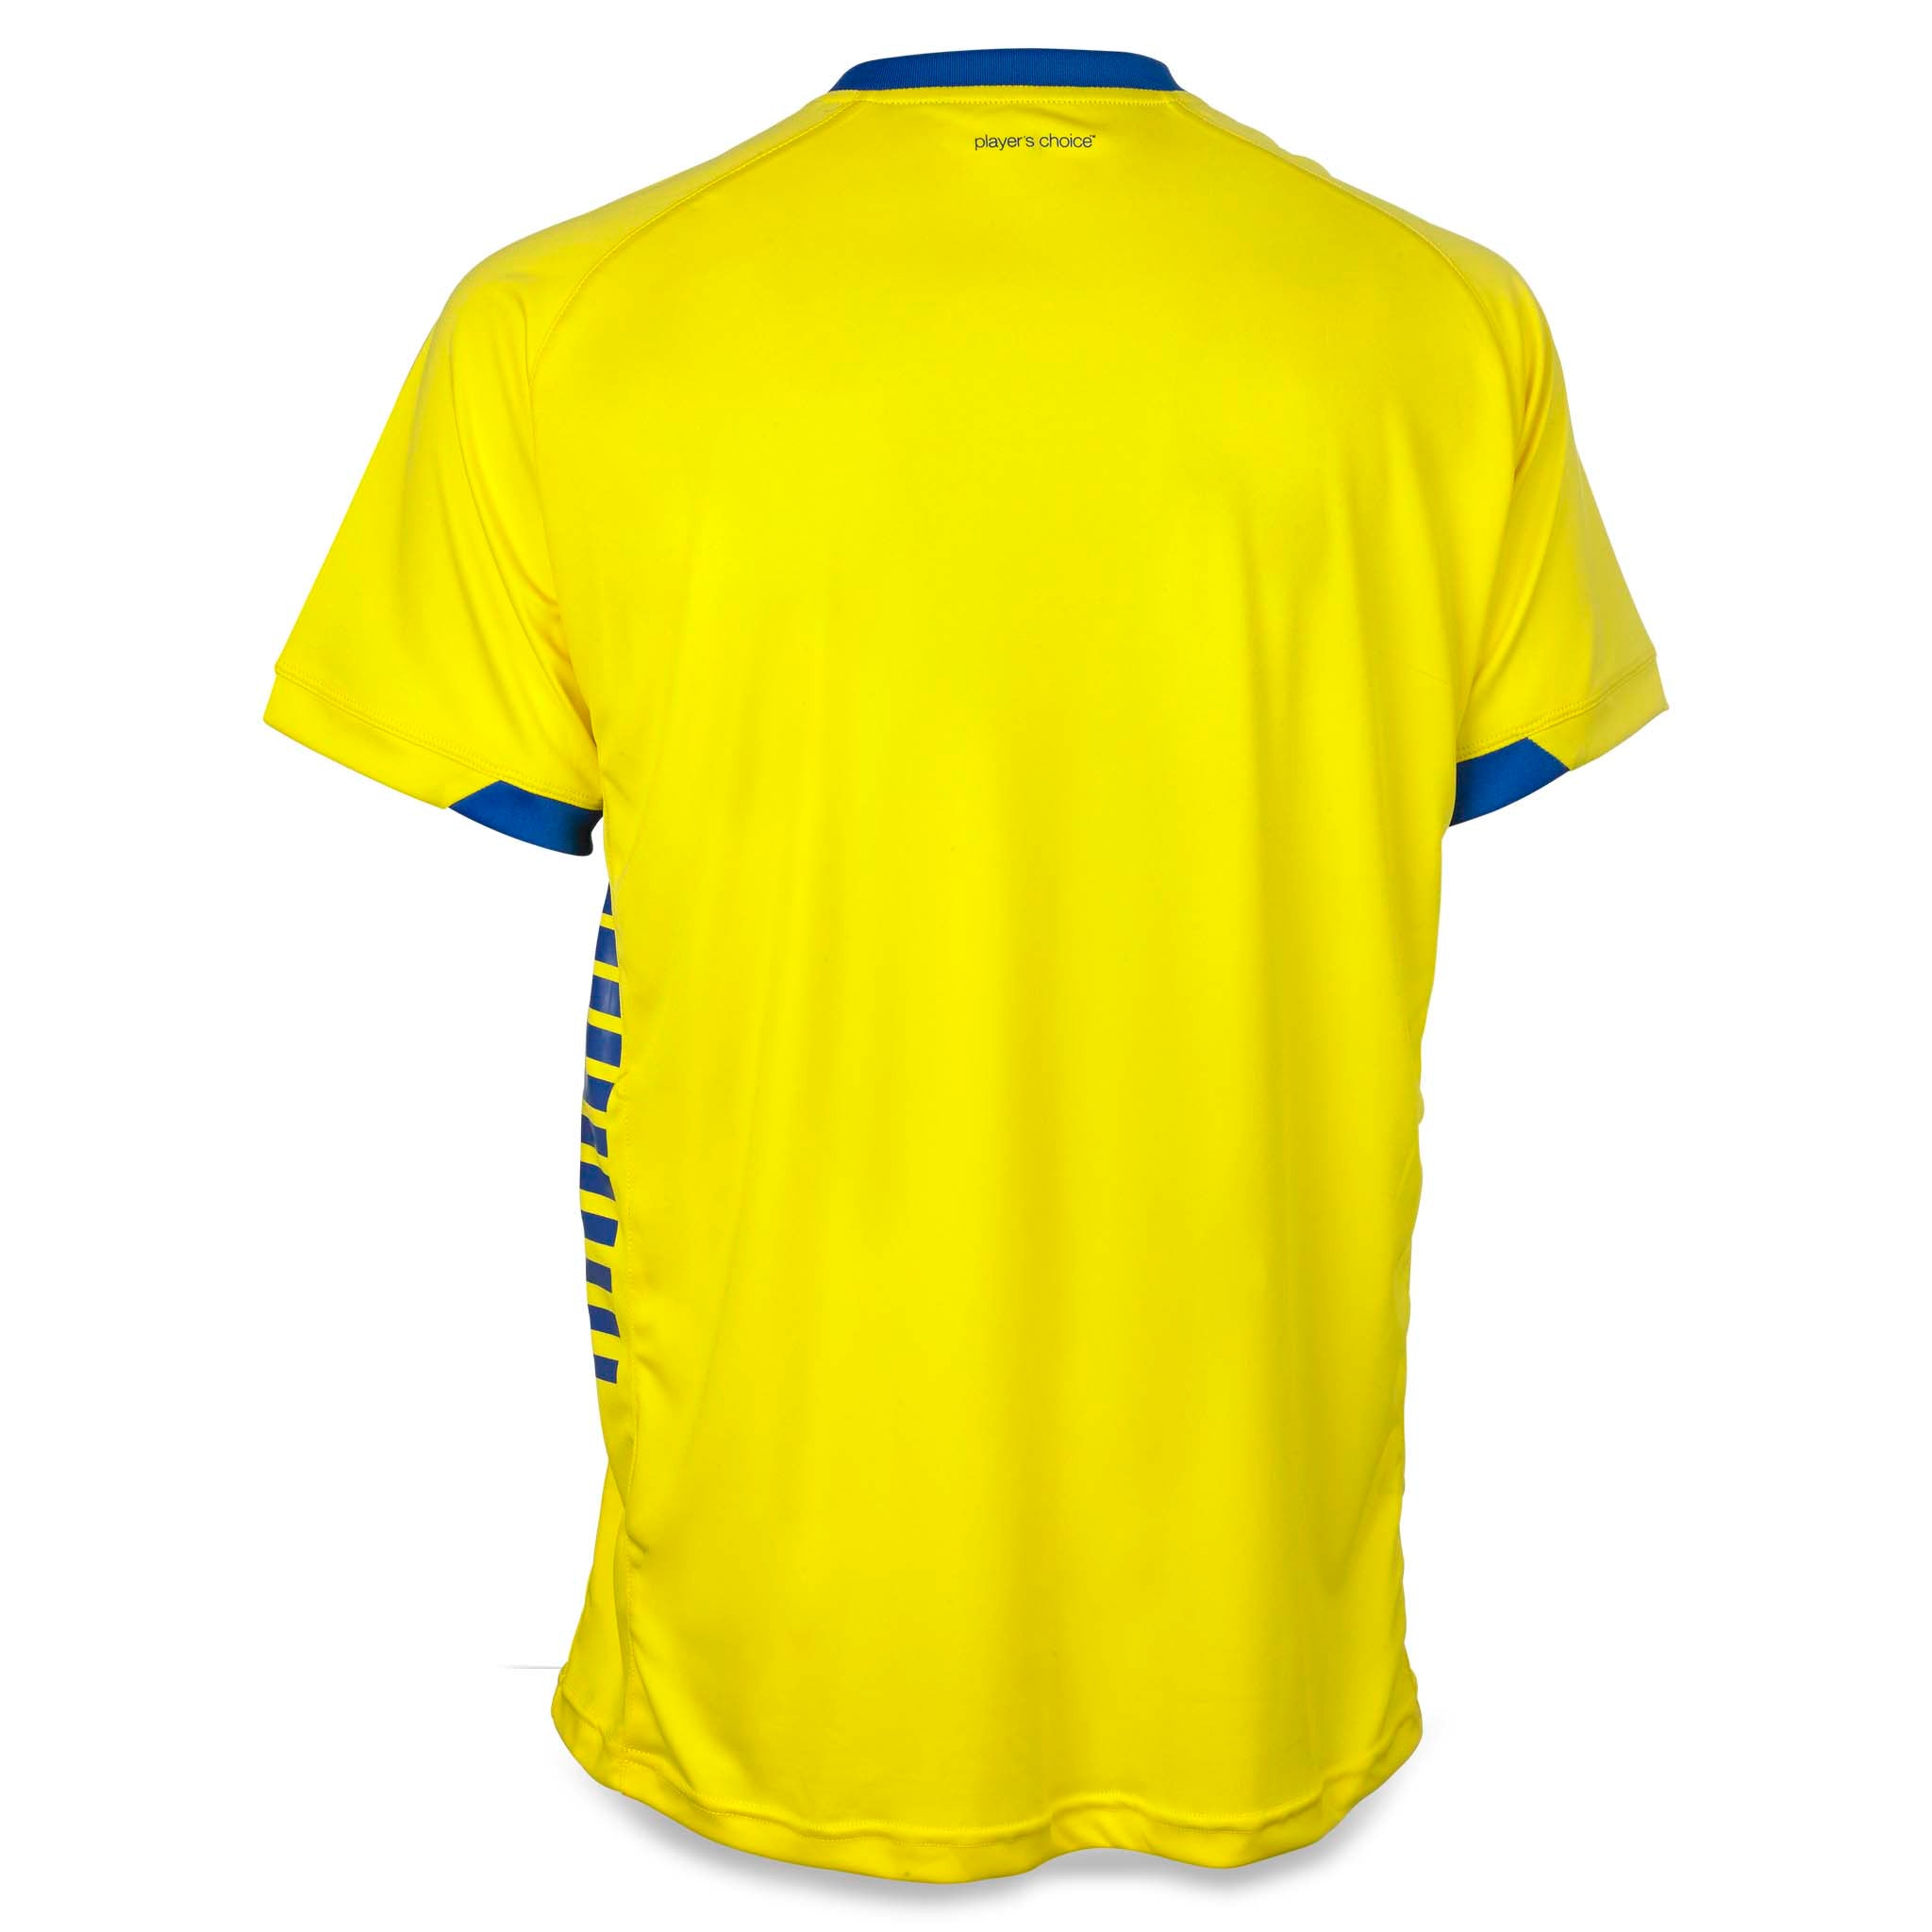 Spain Kortärmad spelartröja #färg_gul/blå